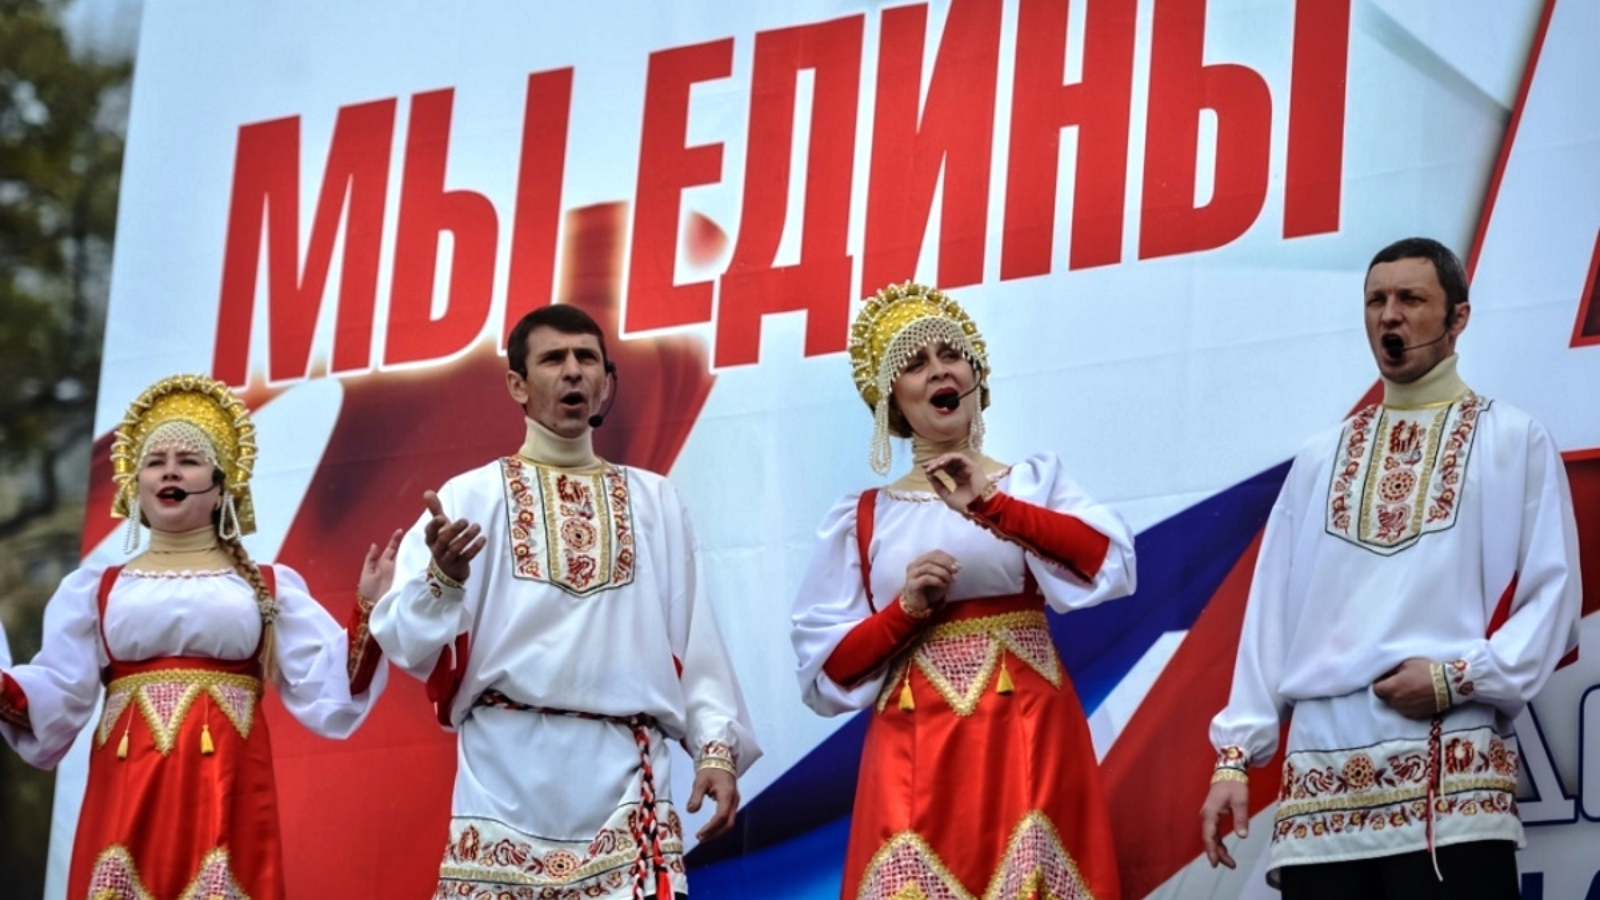 С праздником единства народа России